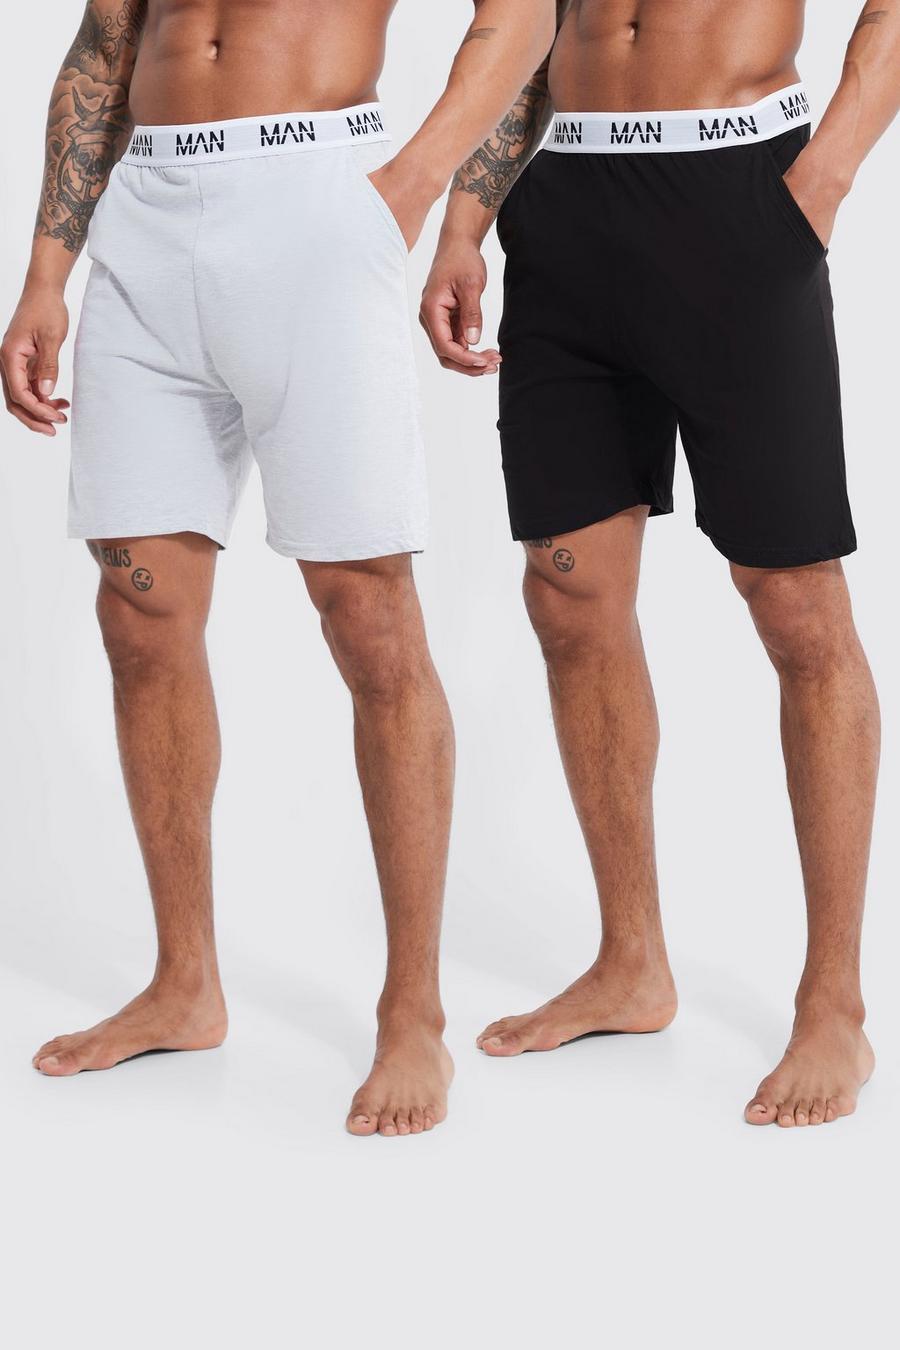 Multi Man Dash Loungewear Shorts (2 Stuks)